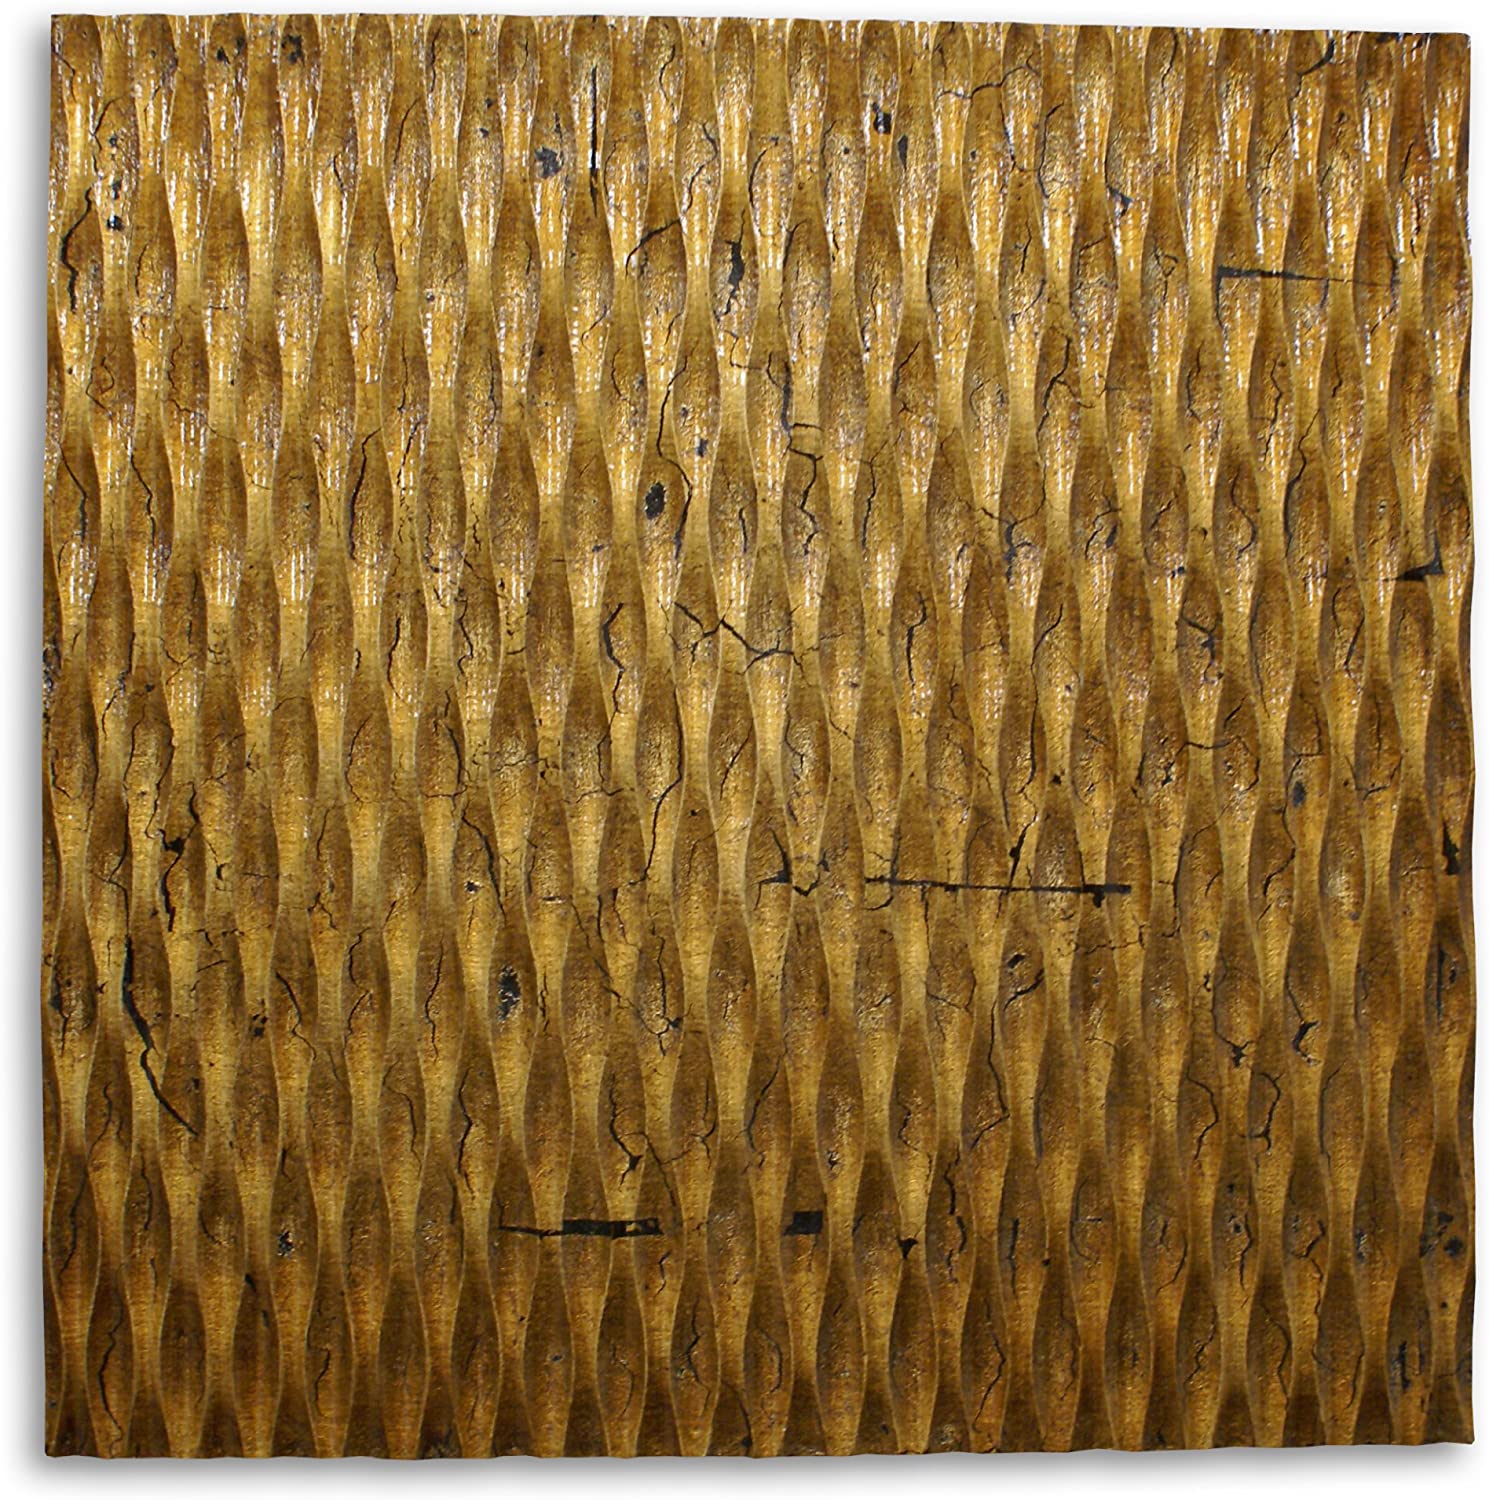 36" X 36" X 1" Raw Wood Look Gold Finish Square Wall Art-274797-1